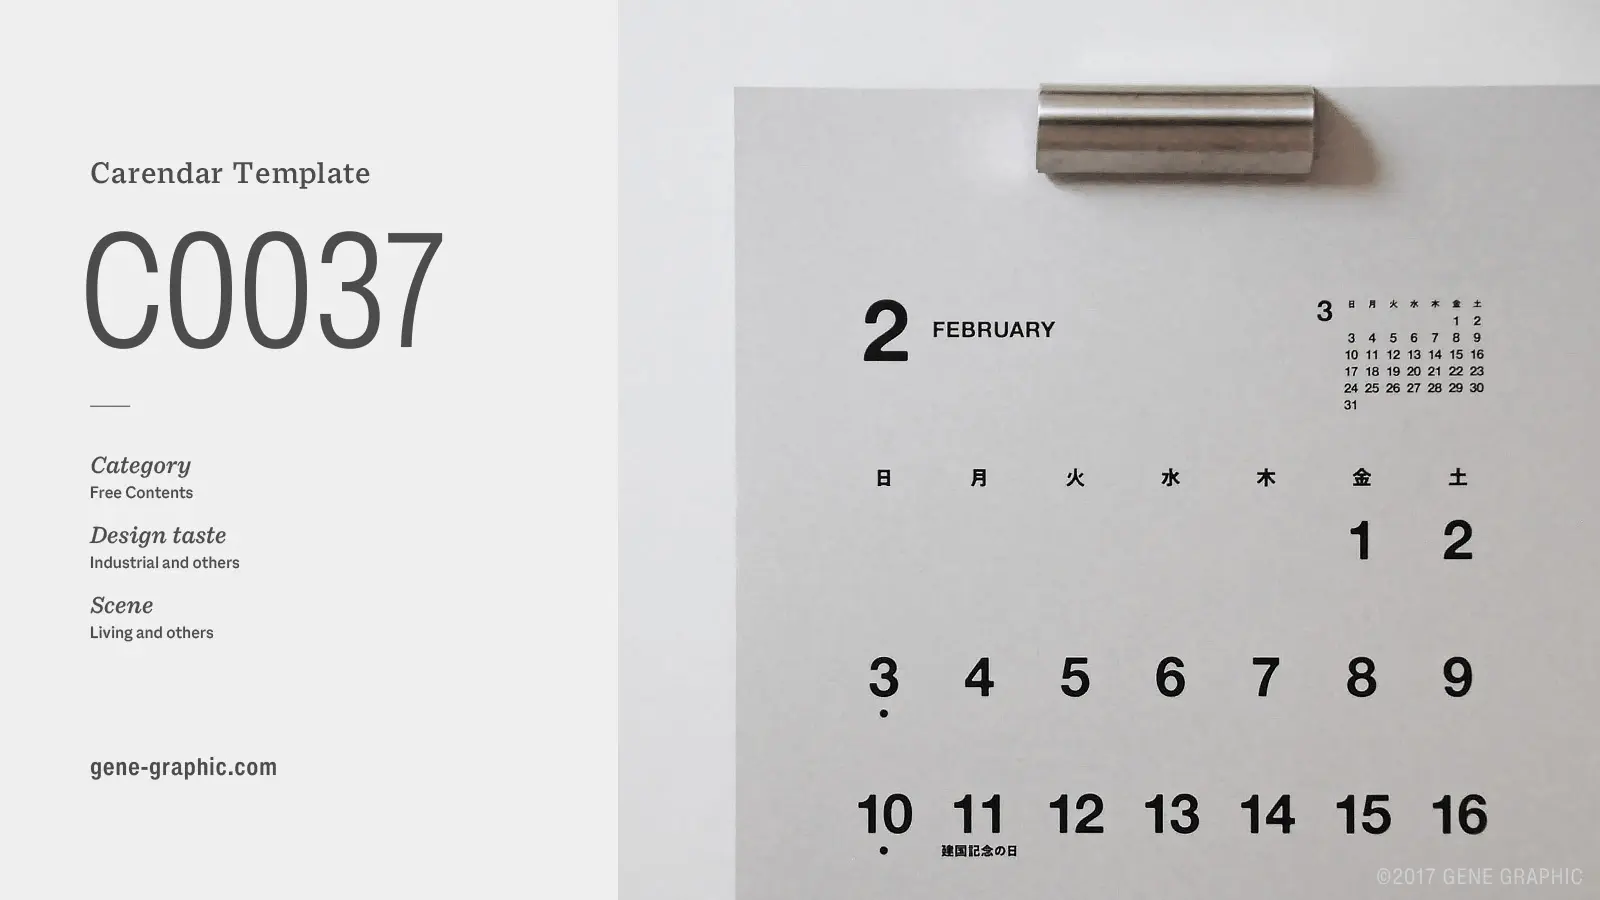 無料素材 誰にでも使いやすい ユニバーサルデザインの日本語カレンダー Class Design